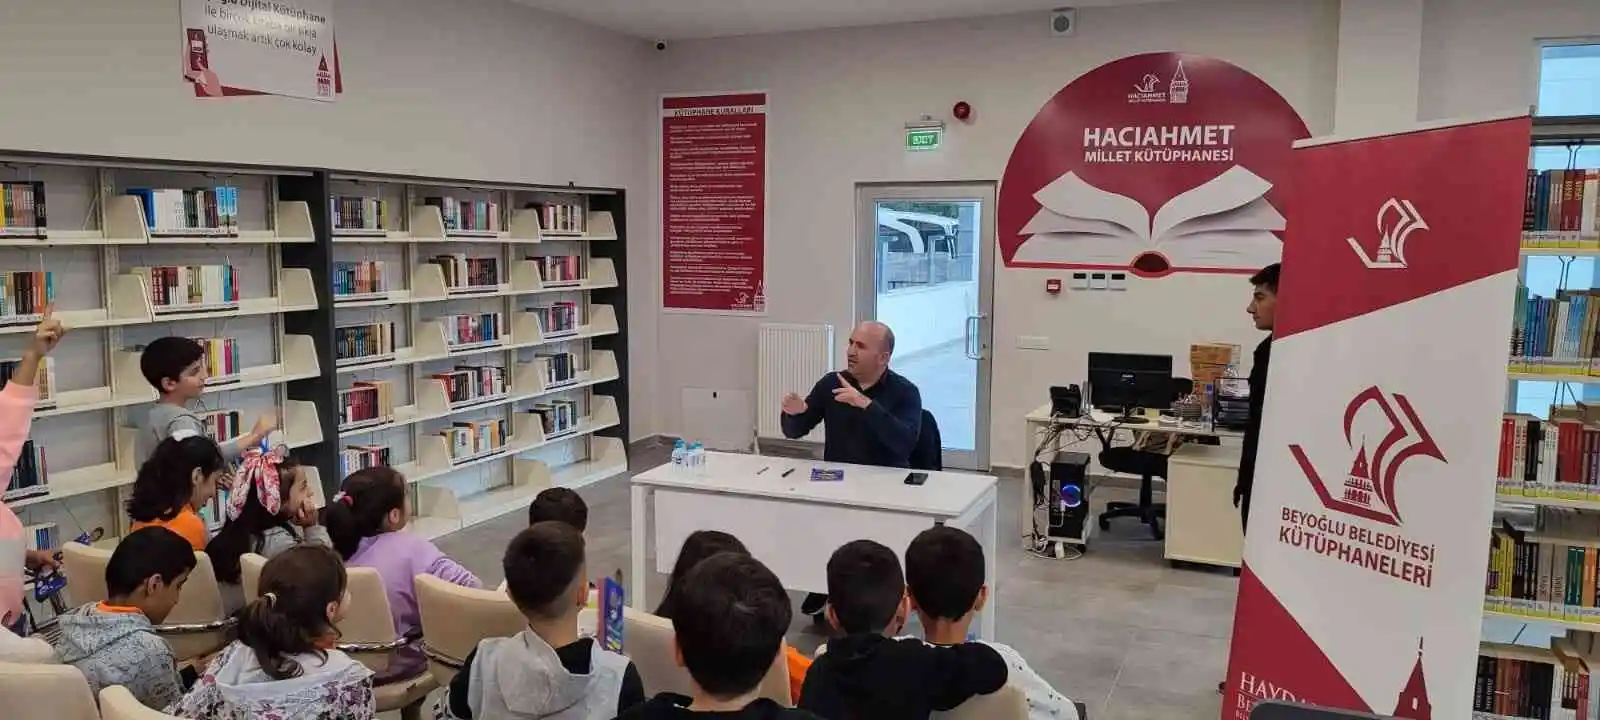 Beyoğlu’ndaki Semt Kütüphaneleri kitapla buluşma noktası oldu
